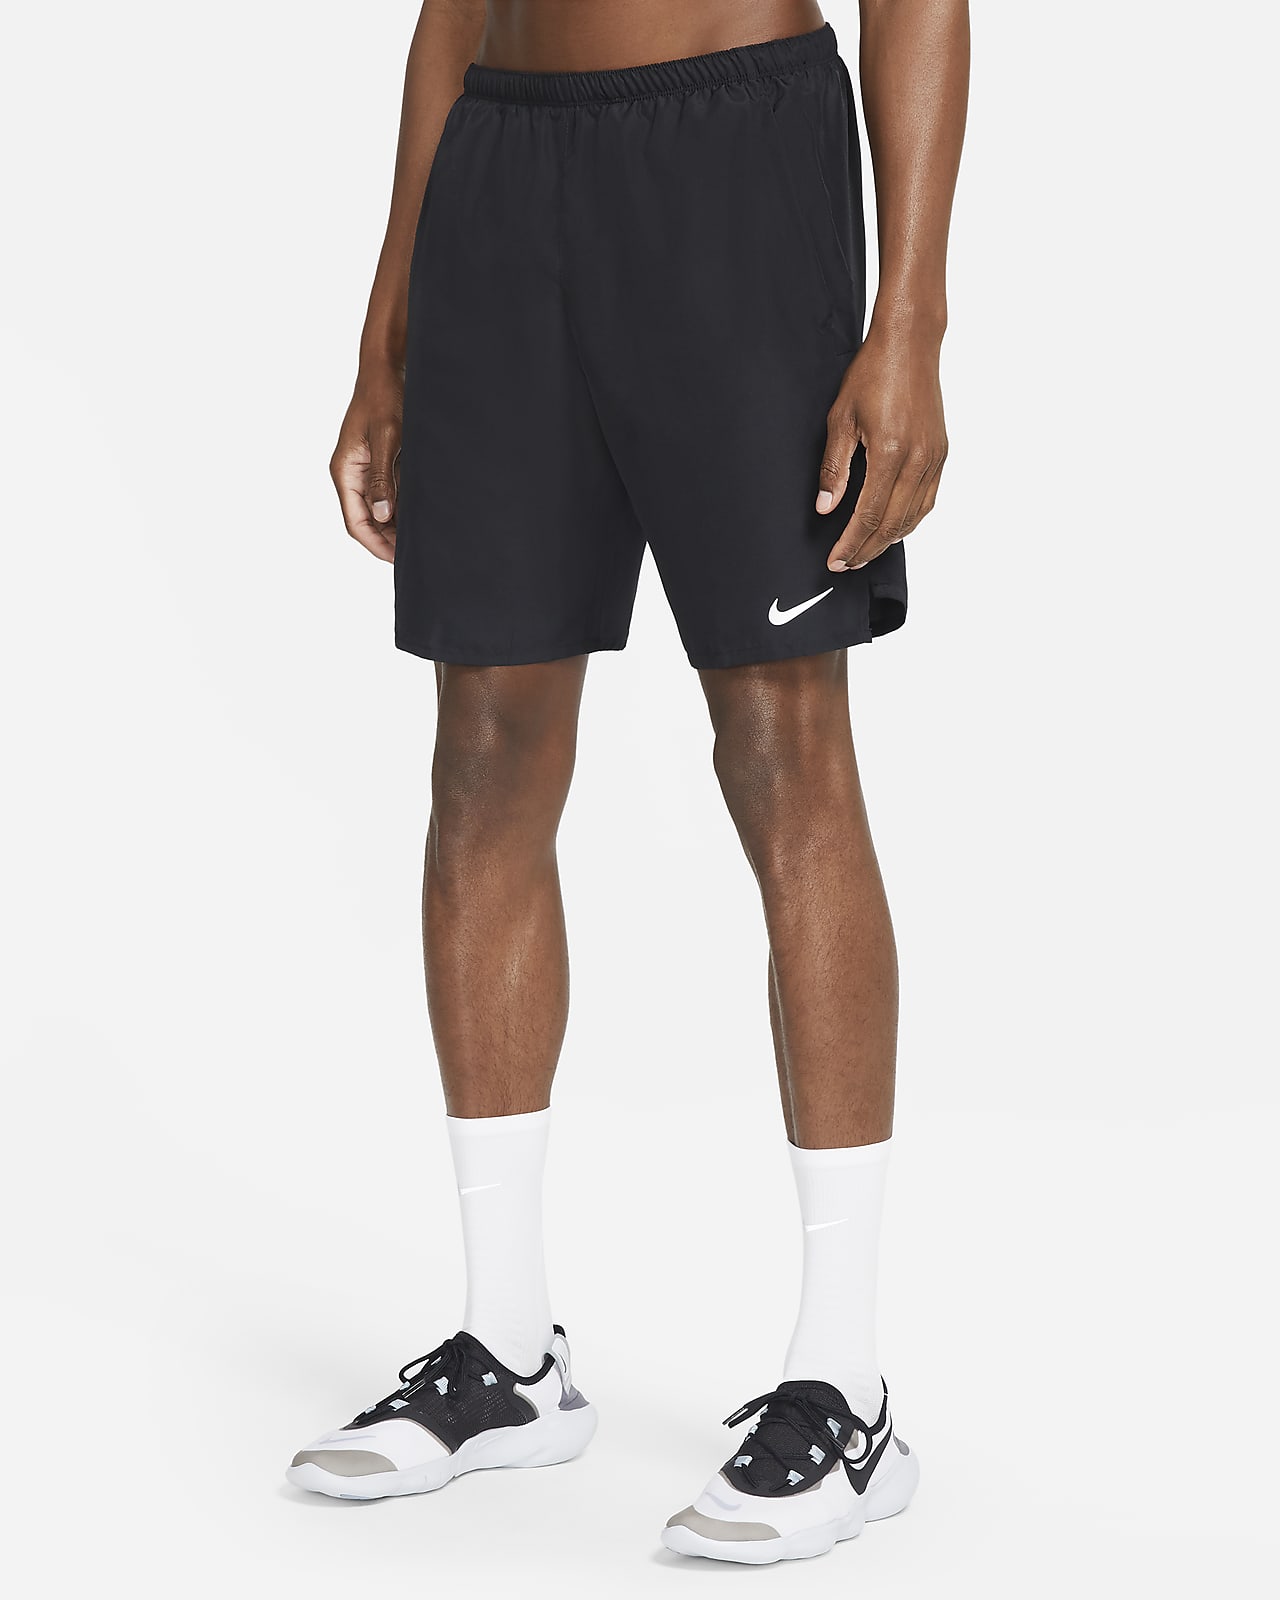 Short de running avec sous-short intégré Nike Challenger pour Homme